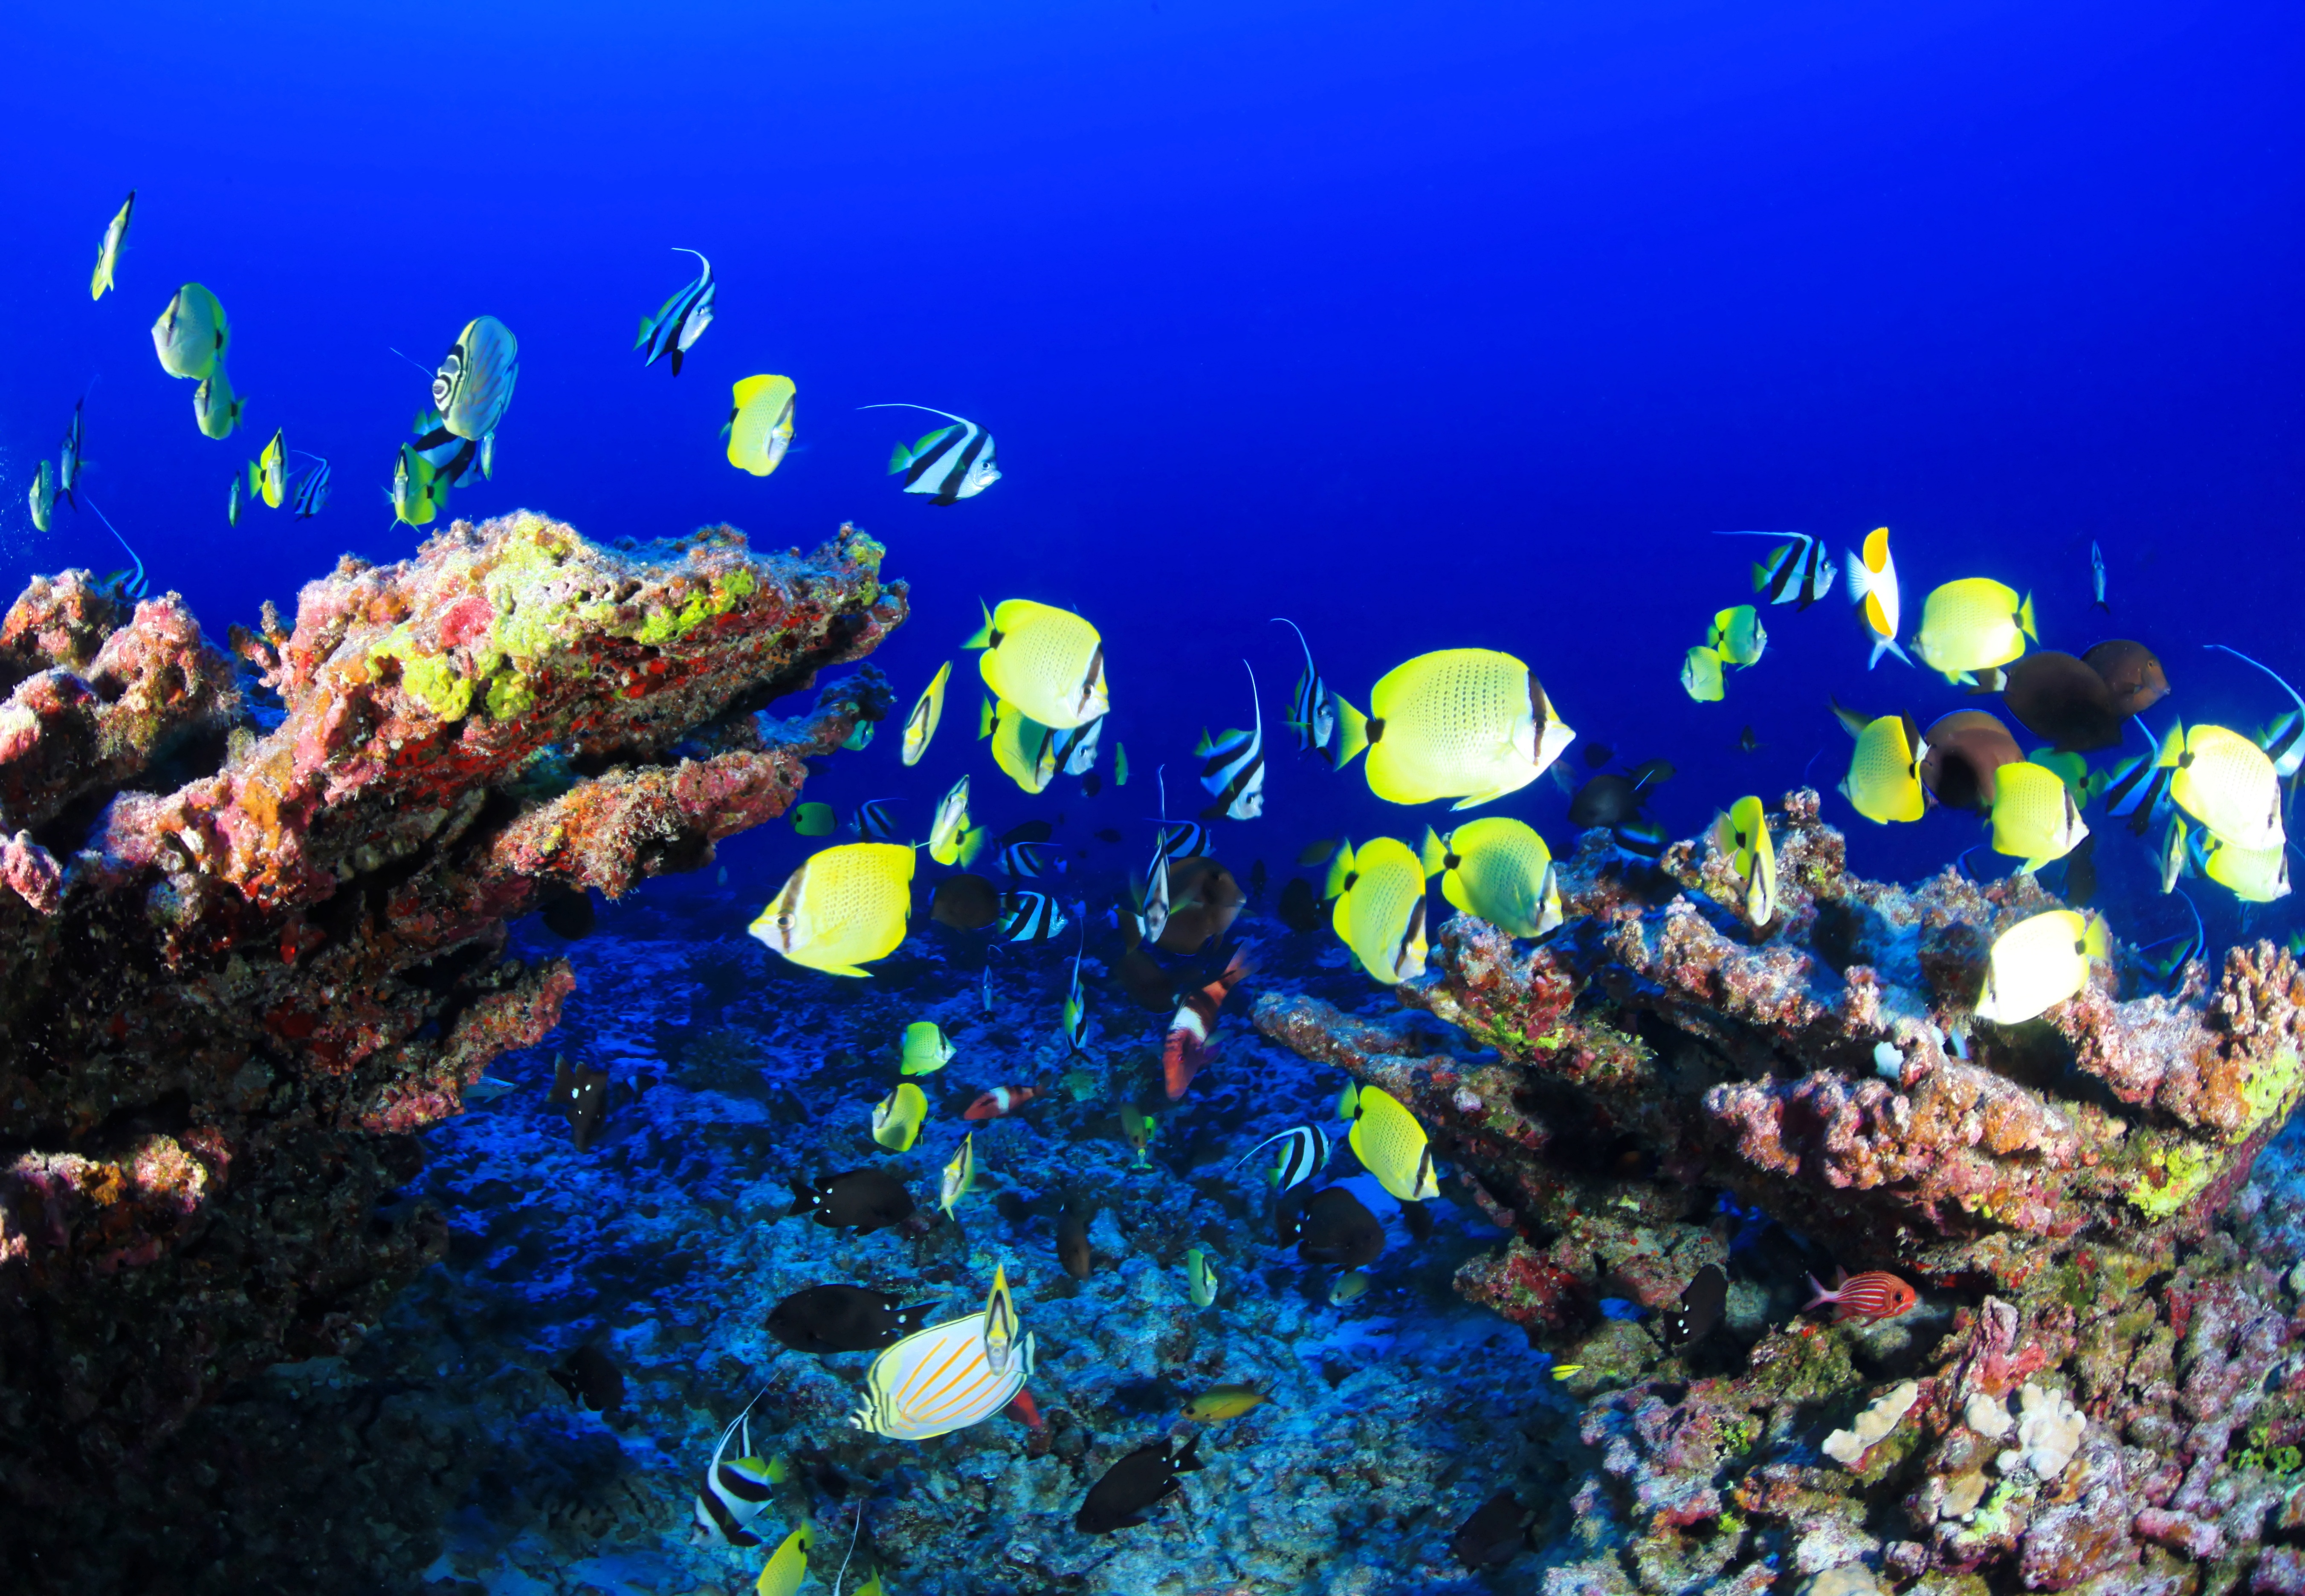 Фото море, природа, океан, подводный, тропический, биология, синий, водный, красочный, рыба, кораллы, коралловый риф, риф, аквариум, морской - бесплатные картинки на Fonwall